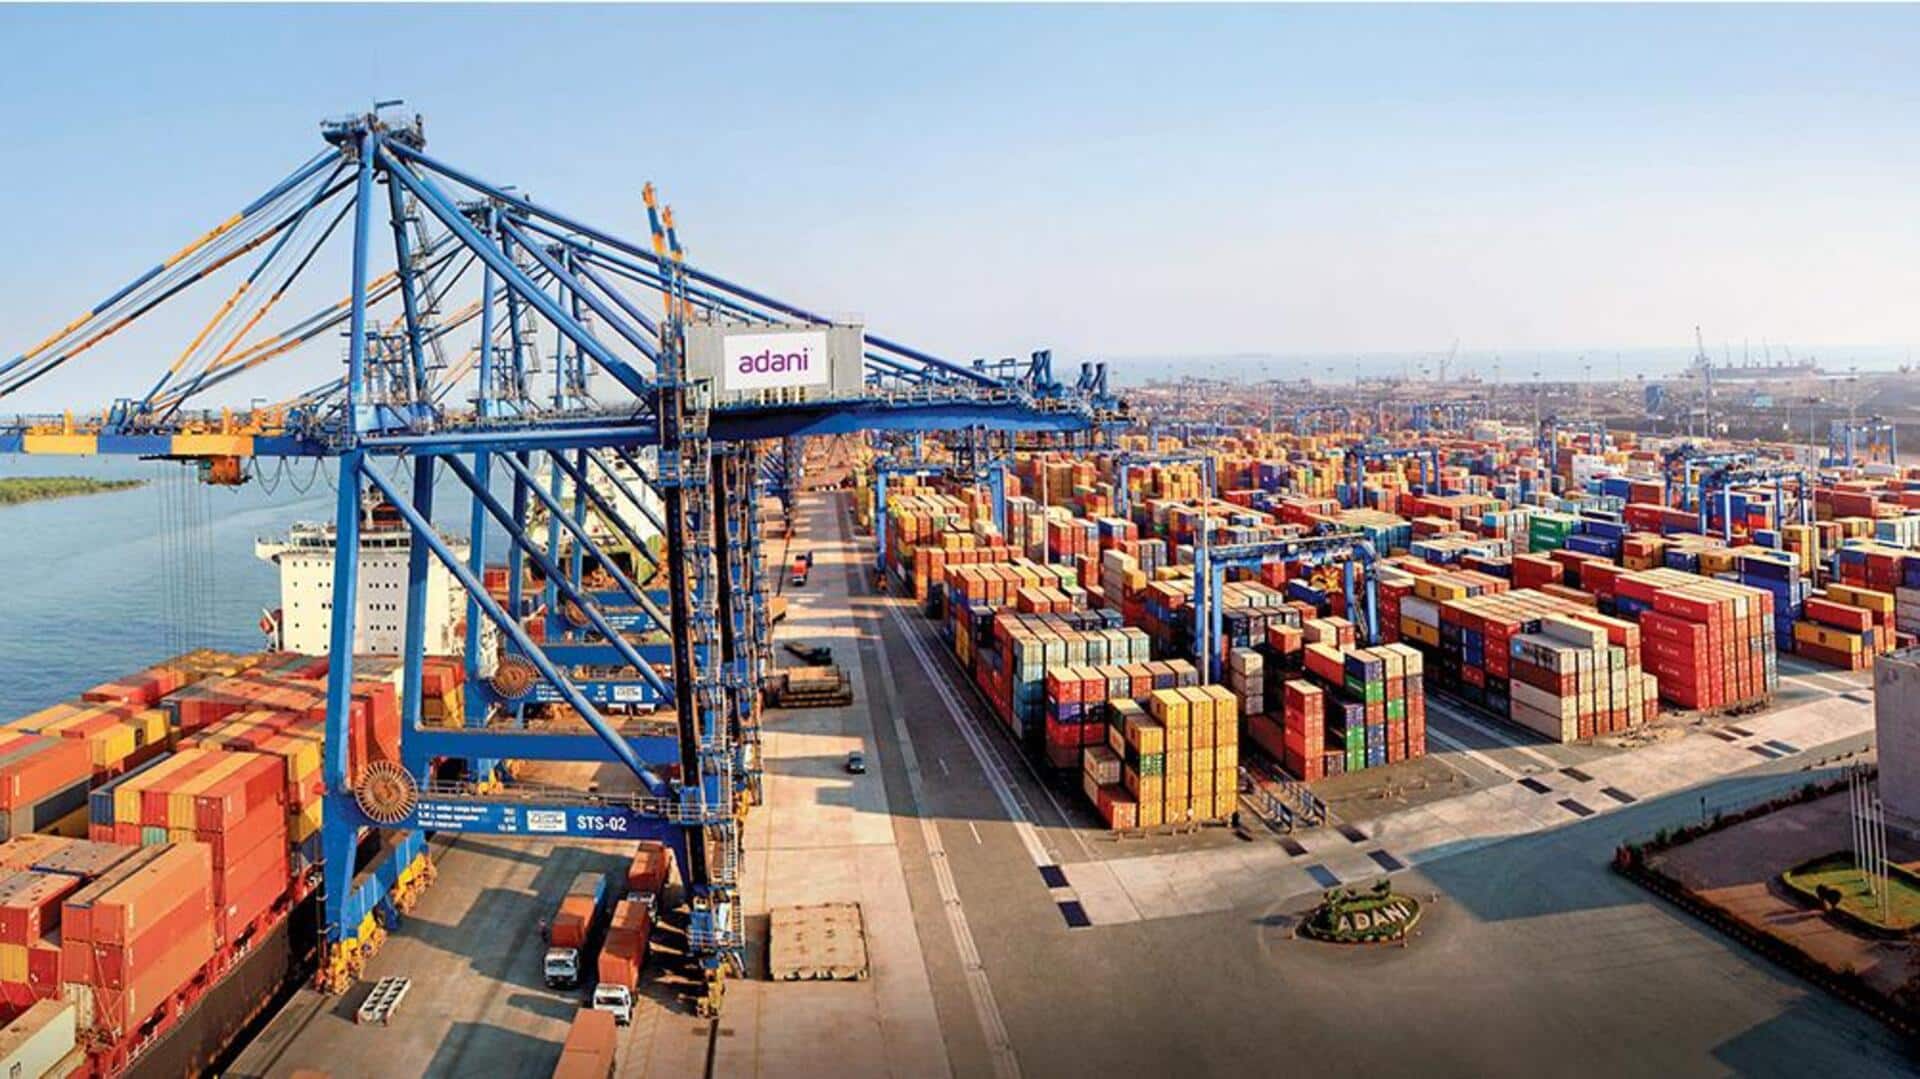 Adani Ports's Q2 net profit rises 4% to Rs. 1,748cr